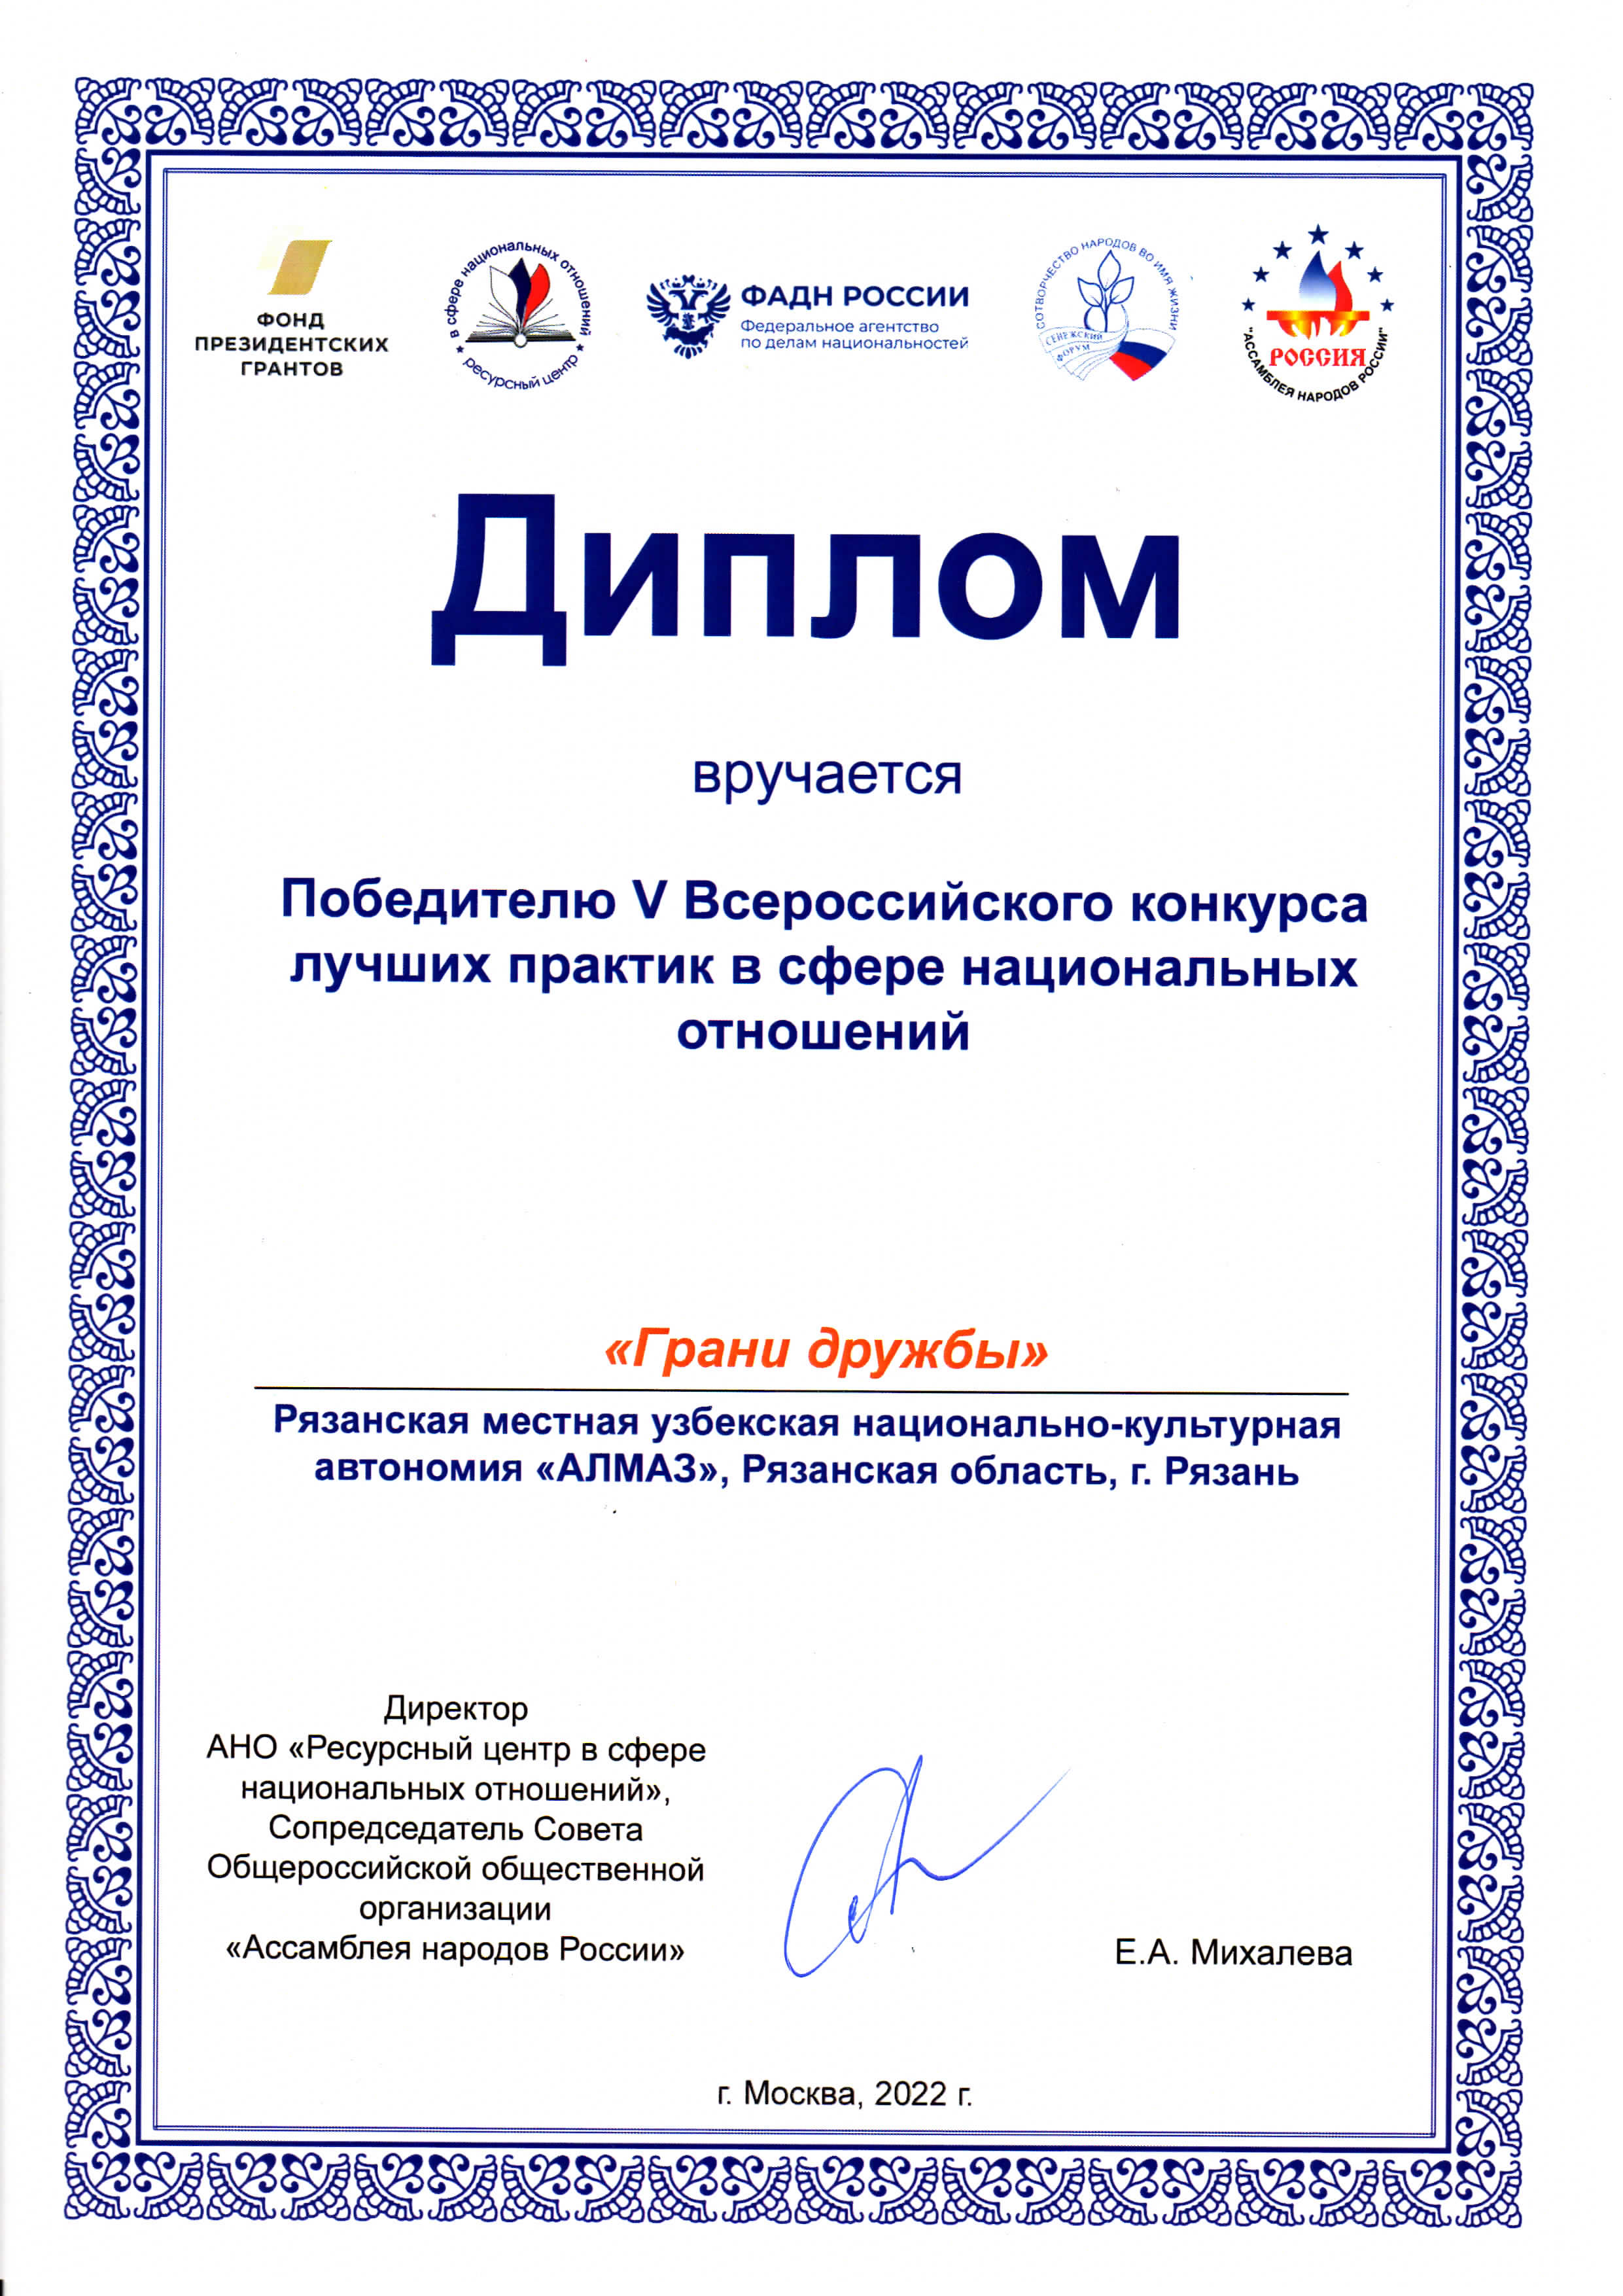 В Общественной палате РФ наградили победителей V Всероссийского конкурса лучших практик в сфере национальных отношений.